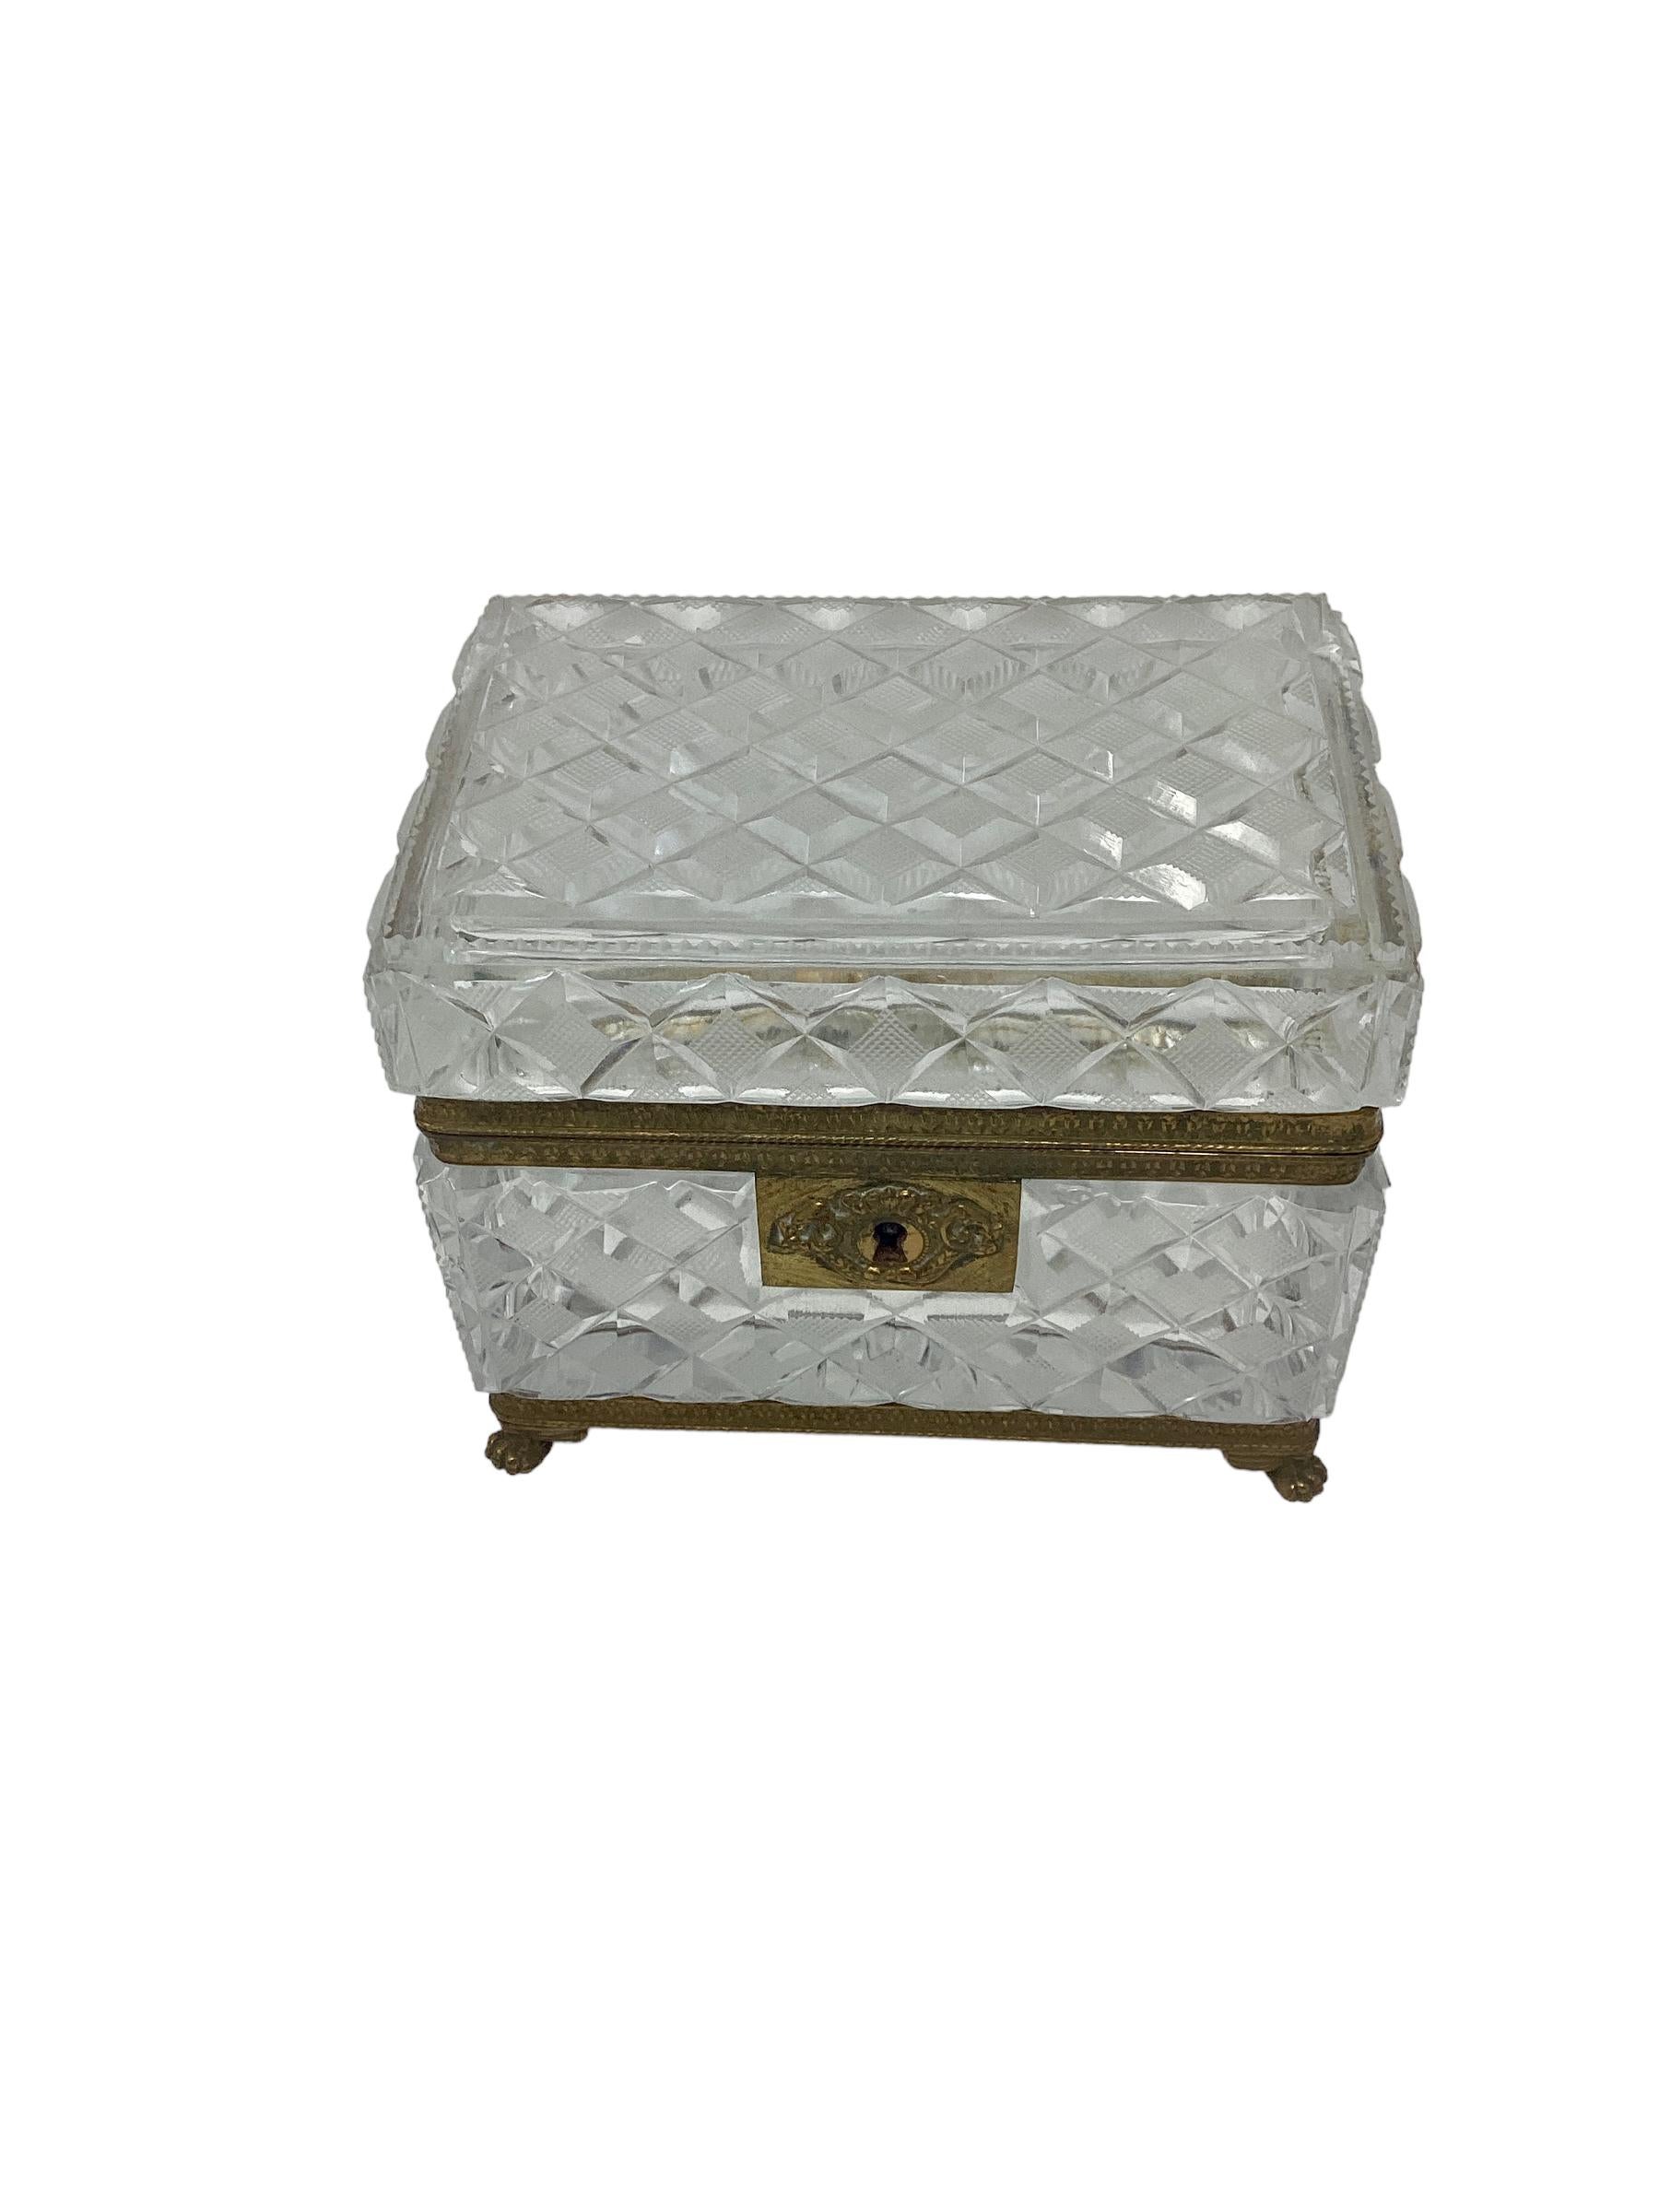 Baccarat Cut Crystal Box oder Schatulle aus dem 19. Jahrhundert mit vergoldeten Bronzebeschlägen. Schöne Dose in geschliffenem Kristall in facettiertem Design. Die Schachtel ist in einem vergoldeten Bronzerahmen mit Tatzenfüßen montiert.